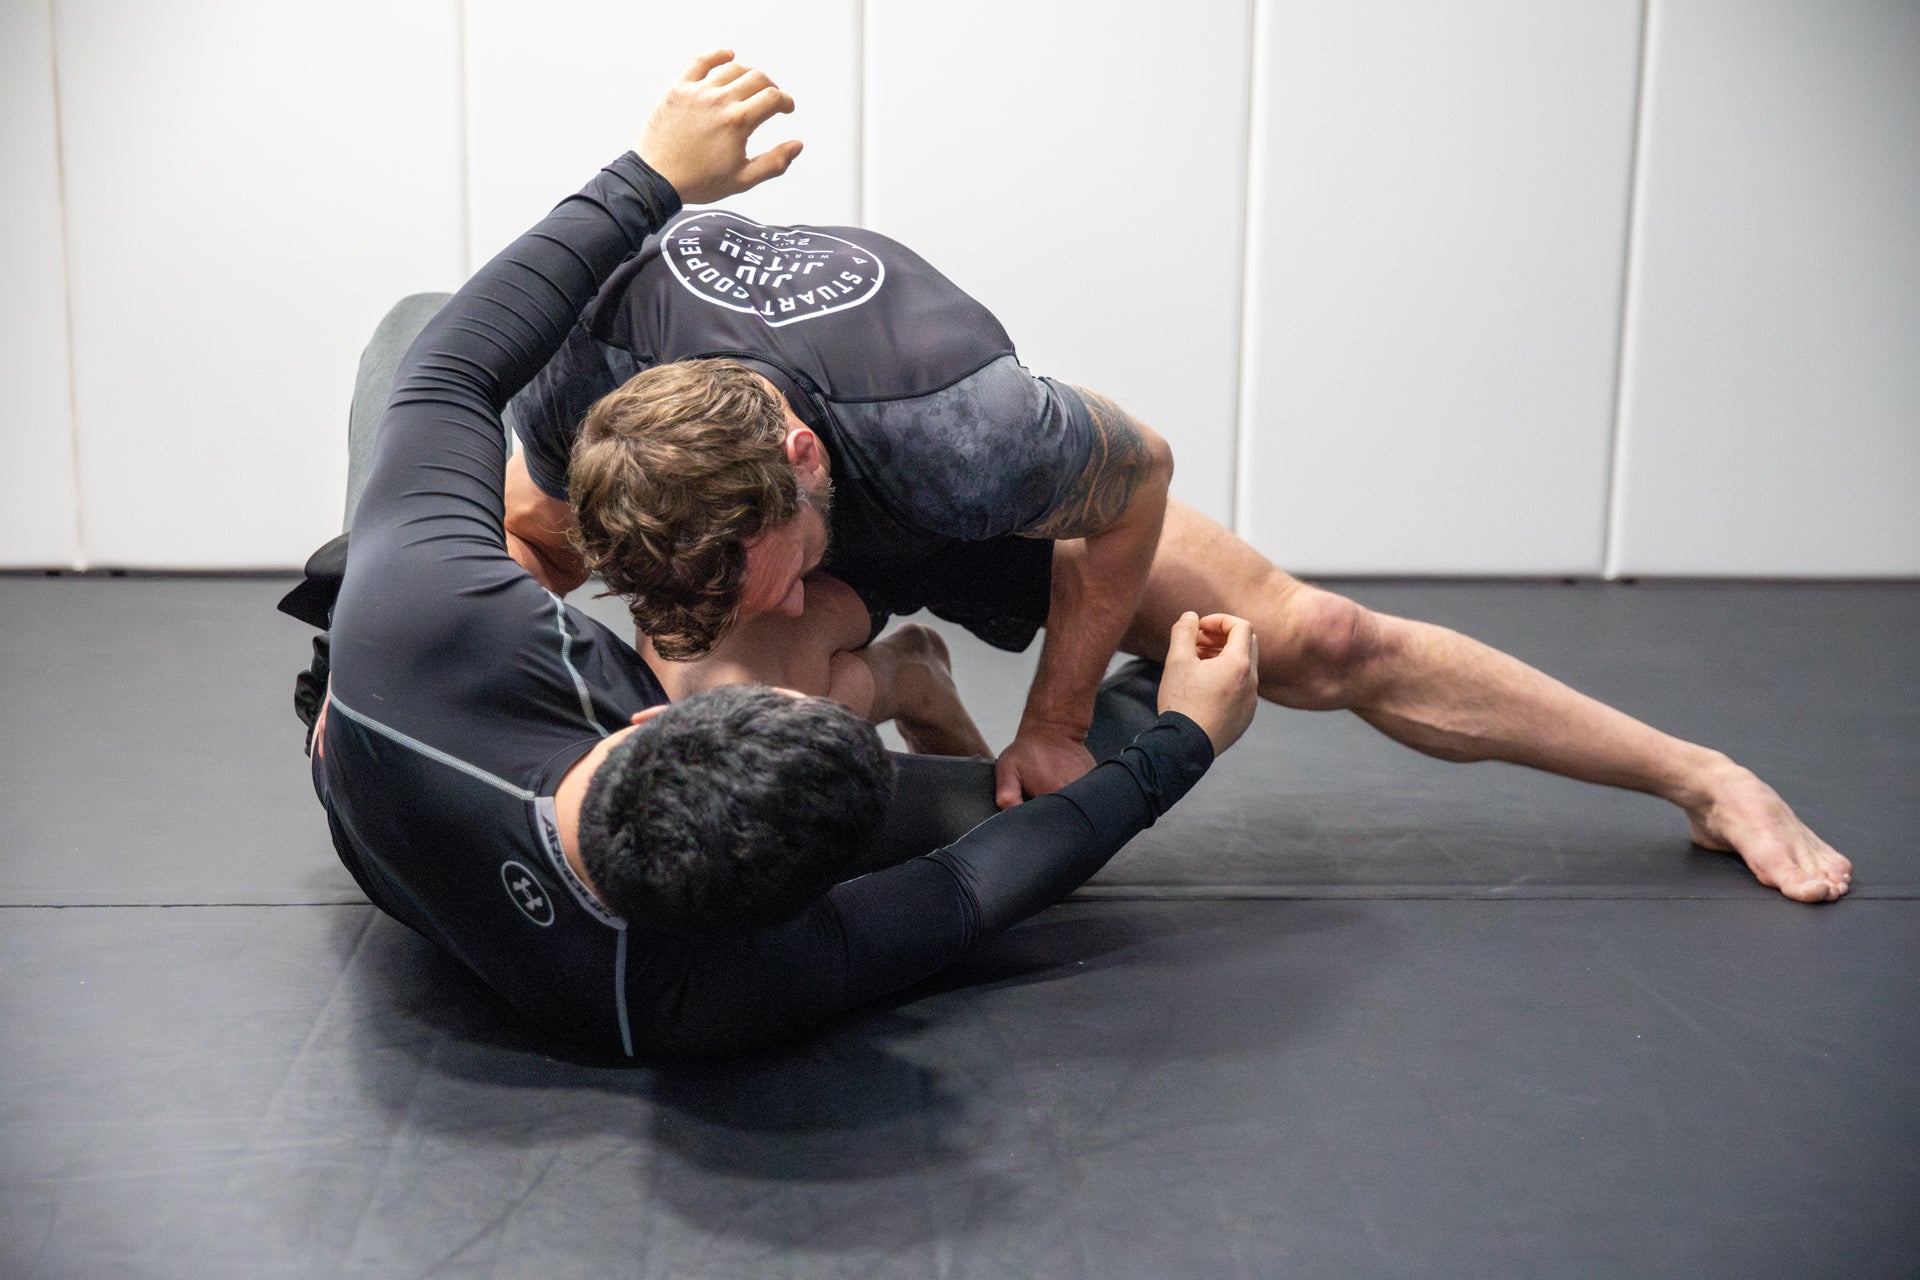 A photo of an athlete training in Brazilian Jiu Jitsu